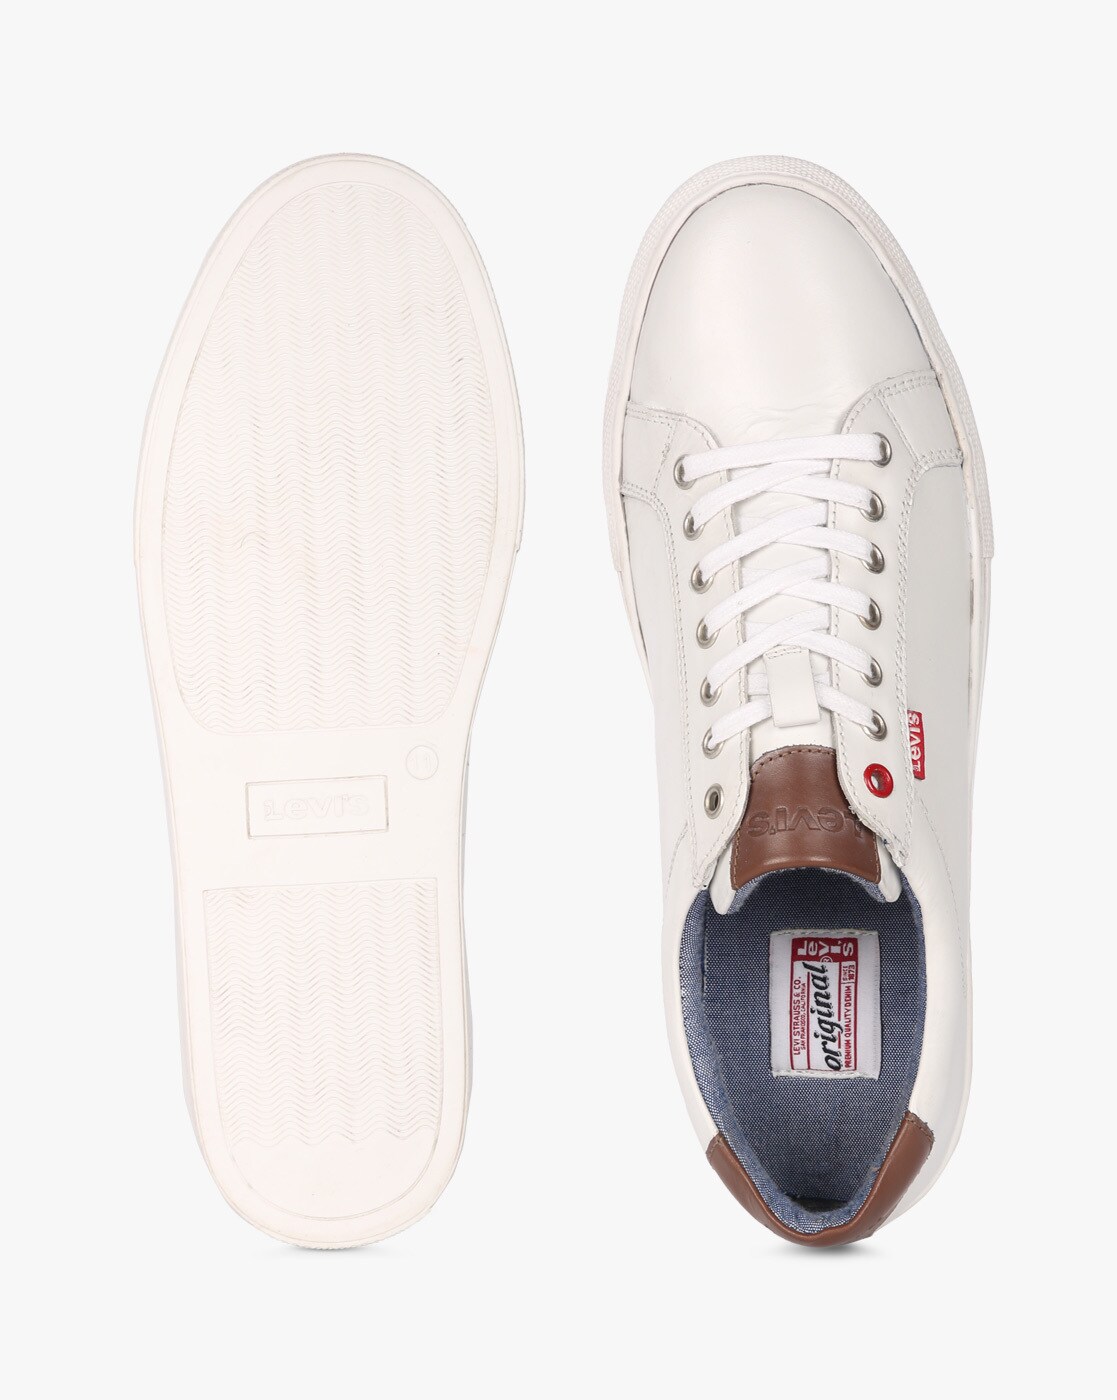 levi's prelude white sneakers